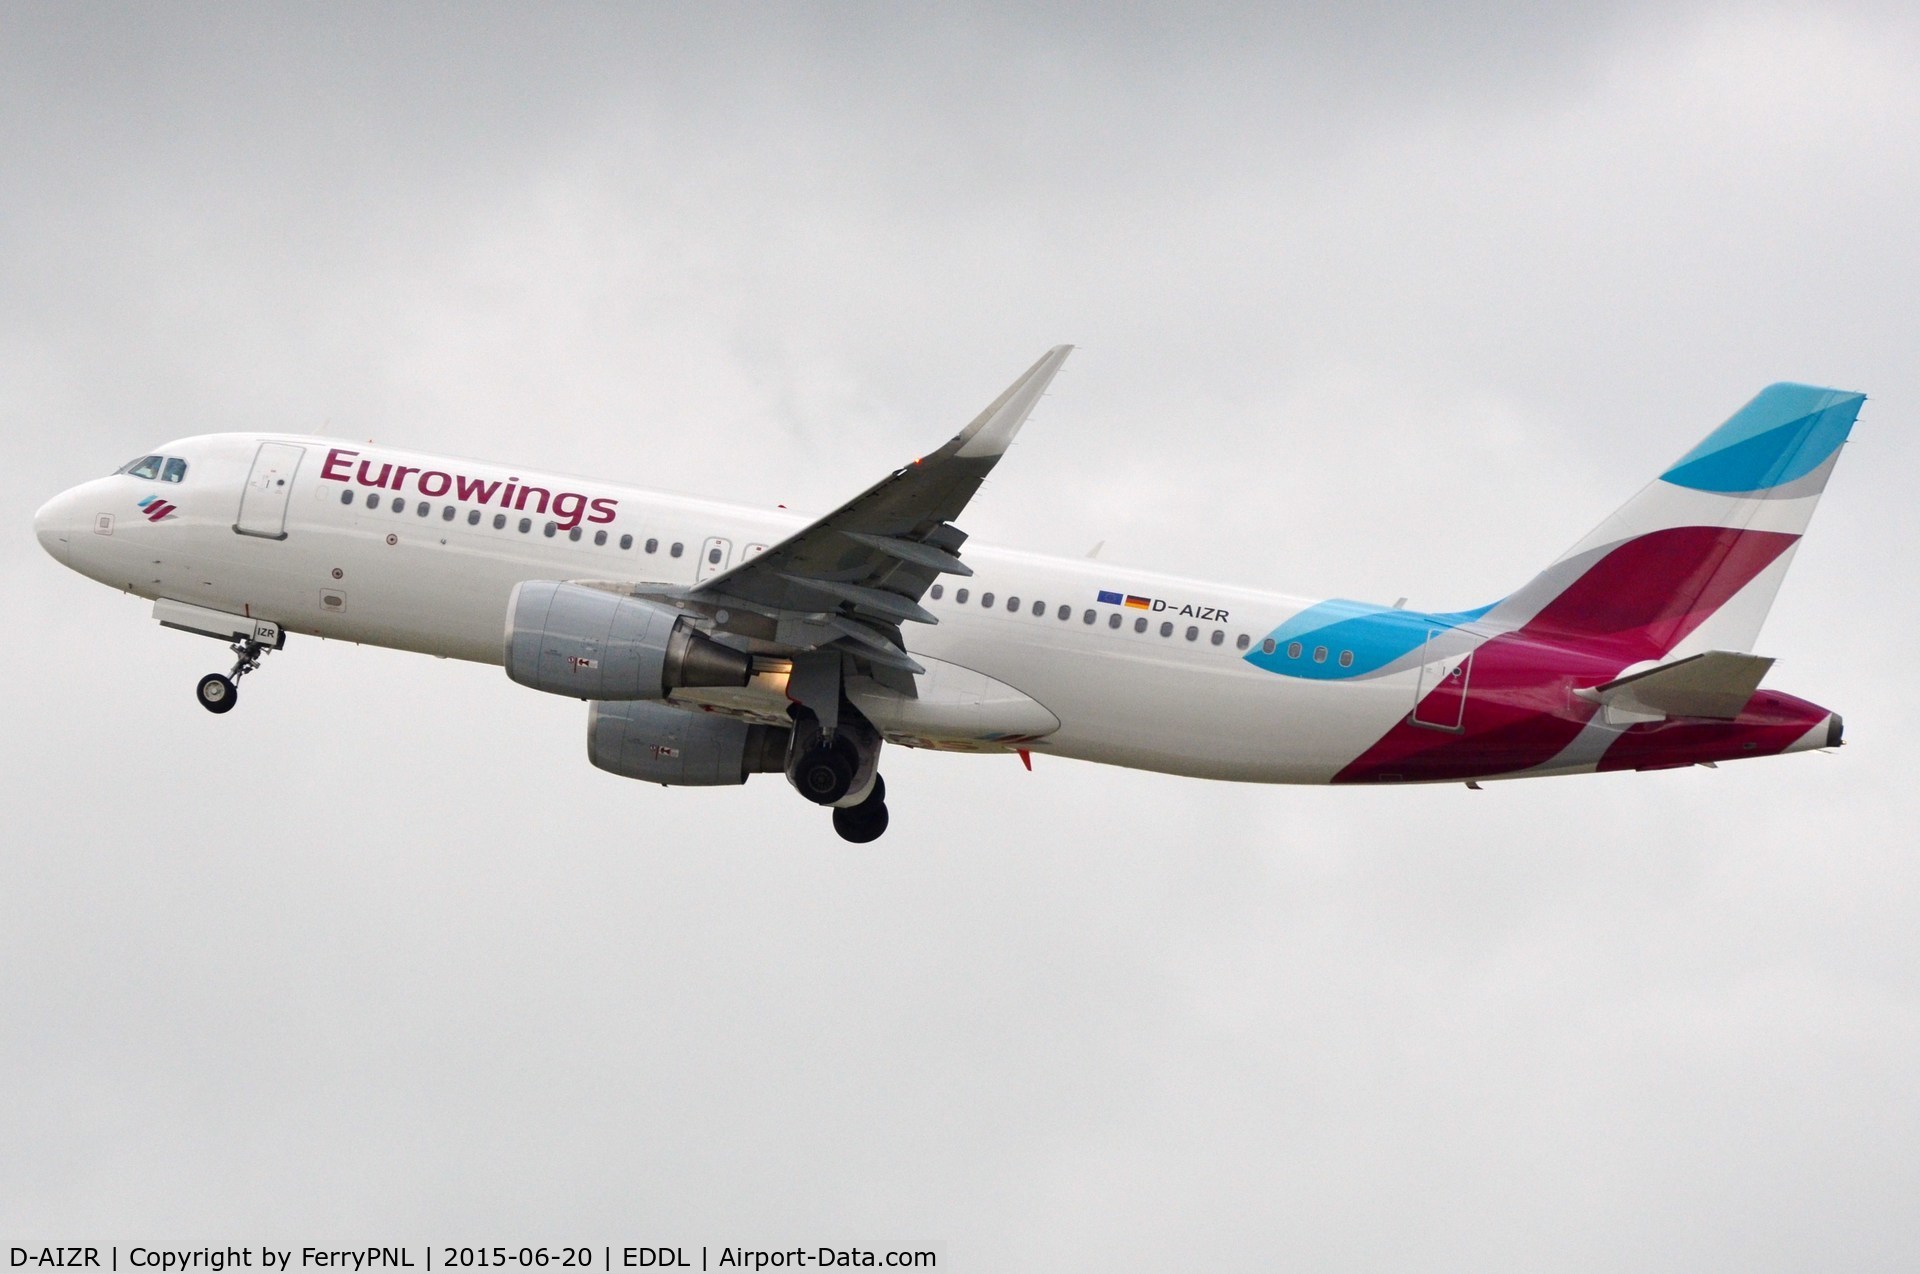 D-AIZR, 2013 Airbus A320-214 C/N 5525, Eurowings A320 departing.